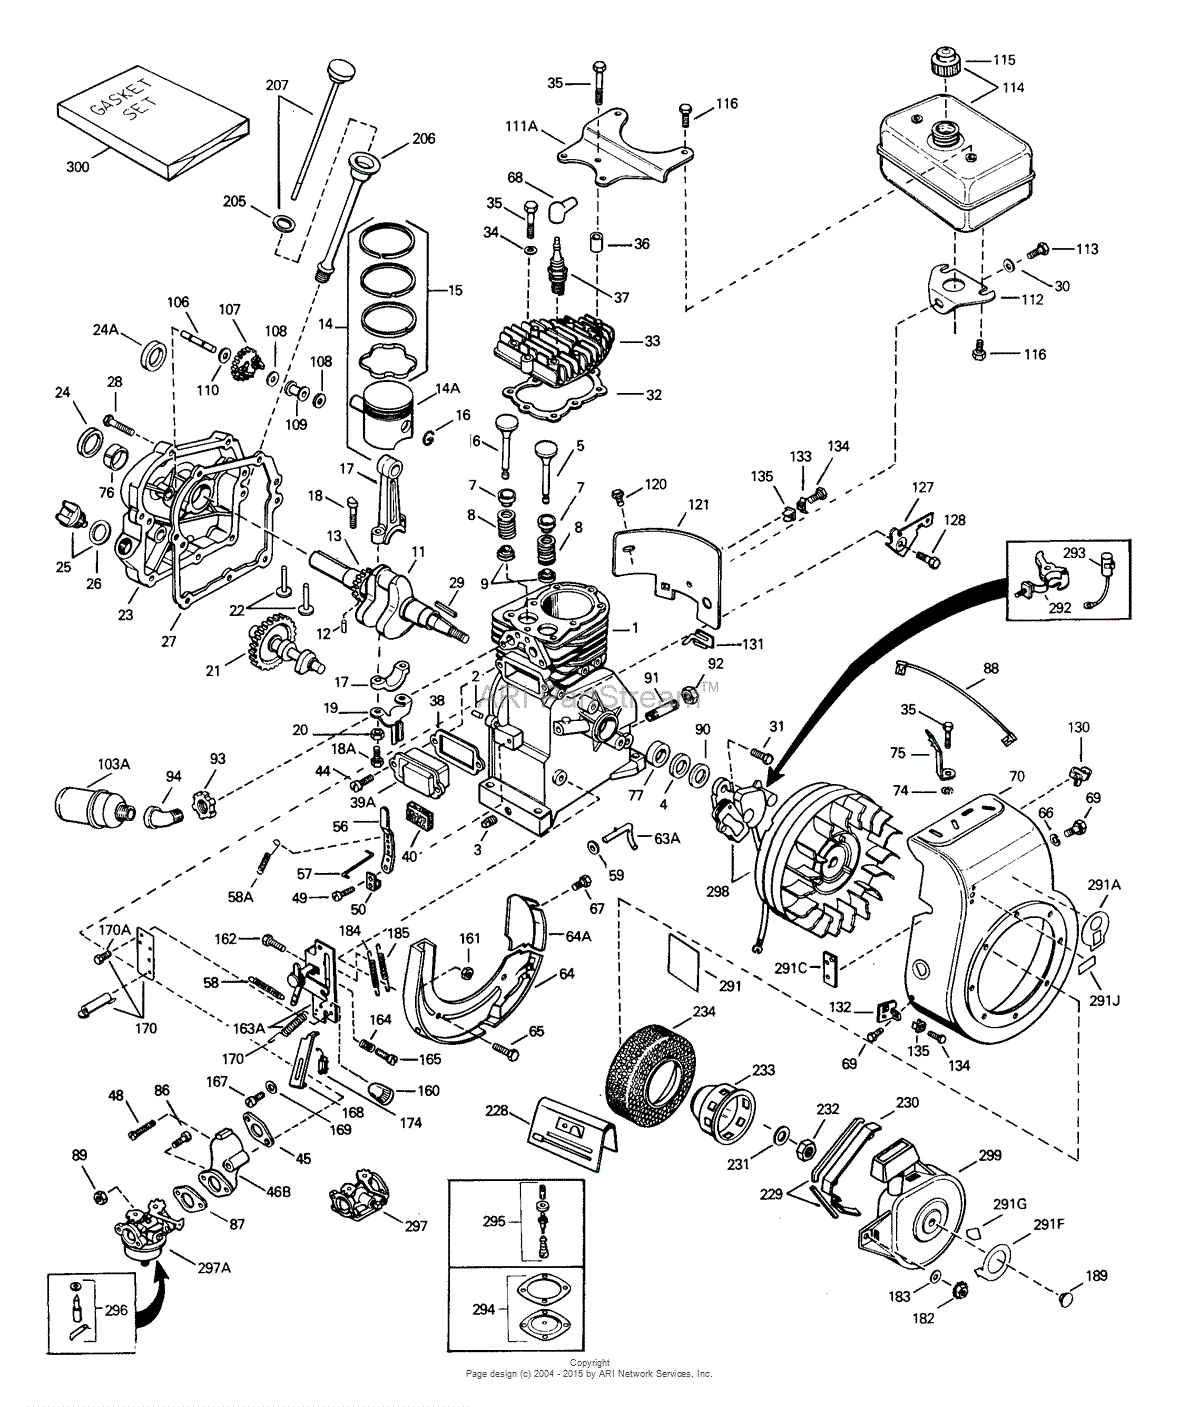 Tecumseh h35 engine specs